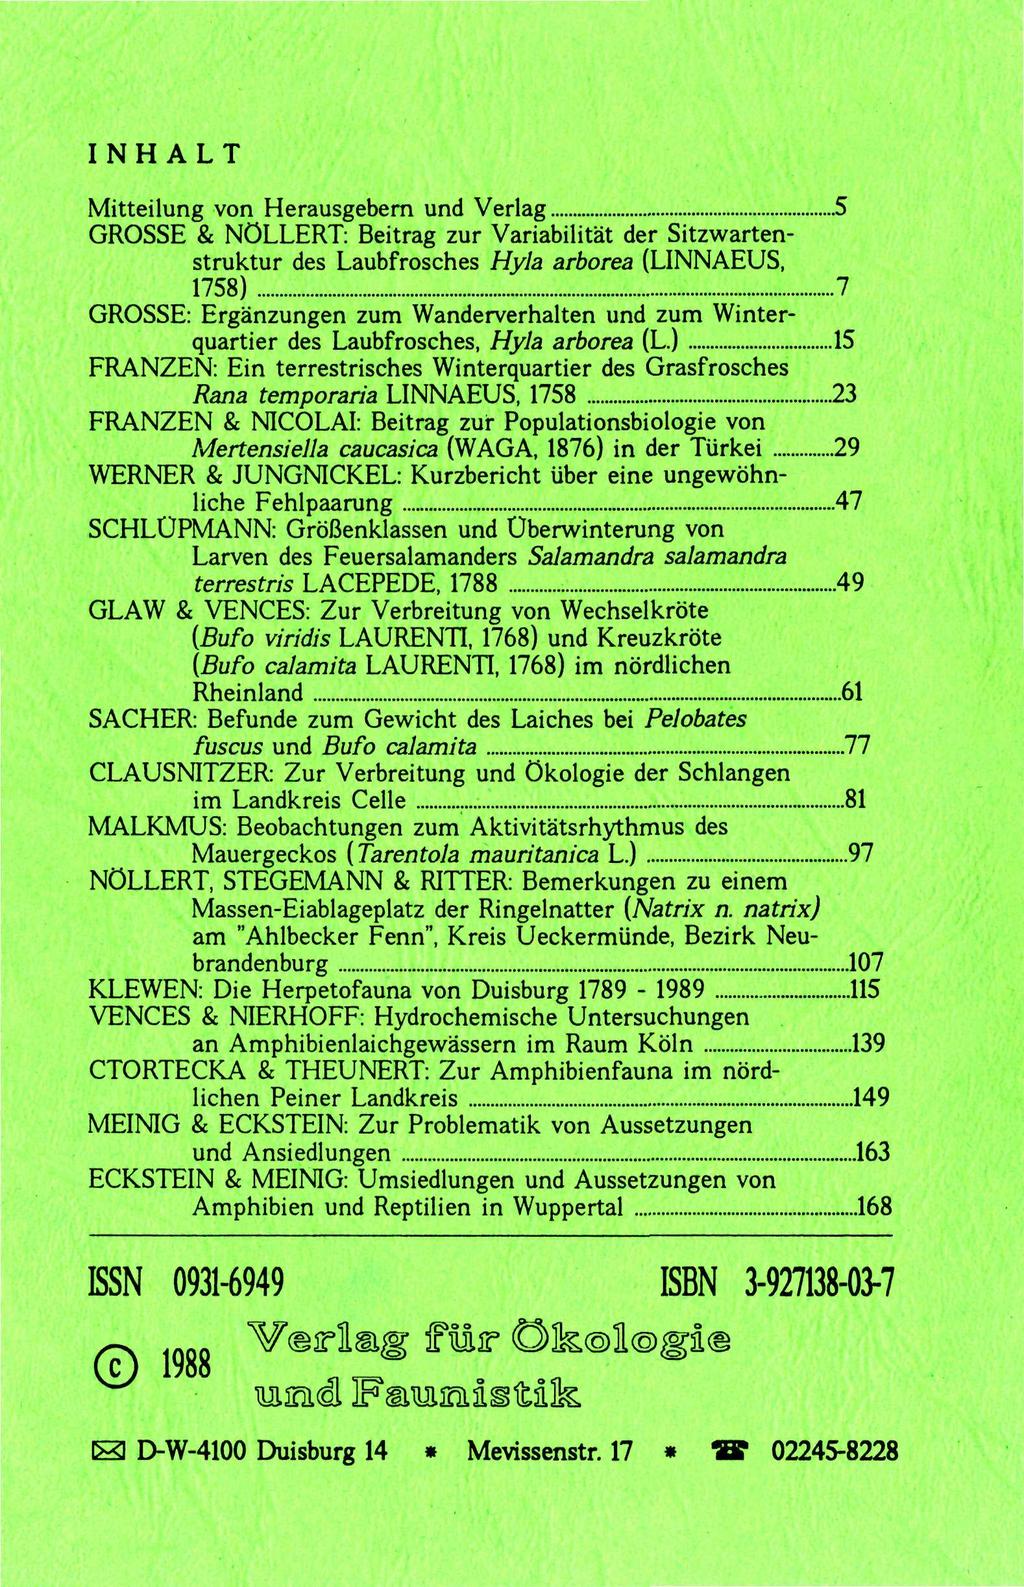 INHALT Mitteilung von Herausgebern und Verlag 5 GROSSE & NÖLLERT: Beitrag zur Variabilität der Sitzwartenstruktur des Laubfrosches Hyla arborea (LINNAEUS, 1758) 7 GROSSE: Ergänzungen zum